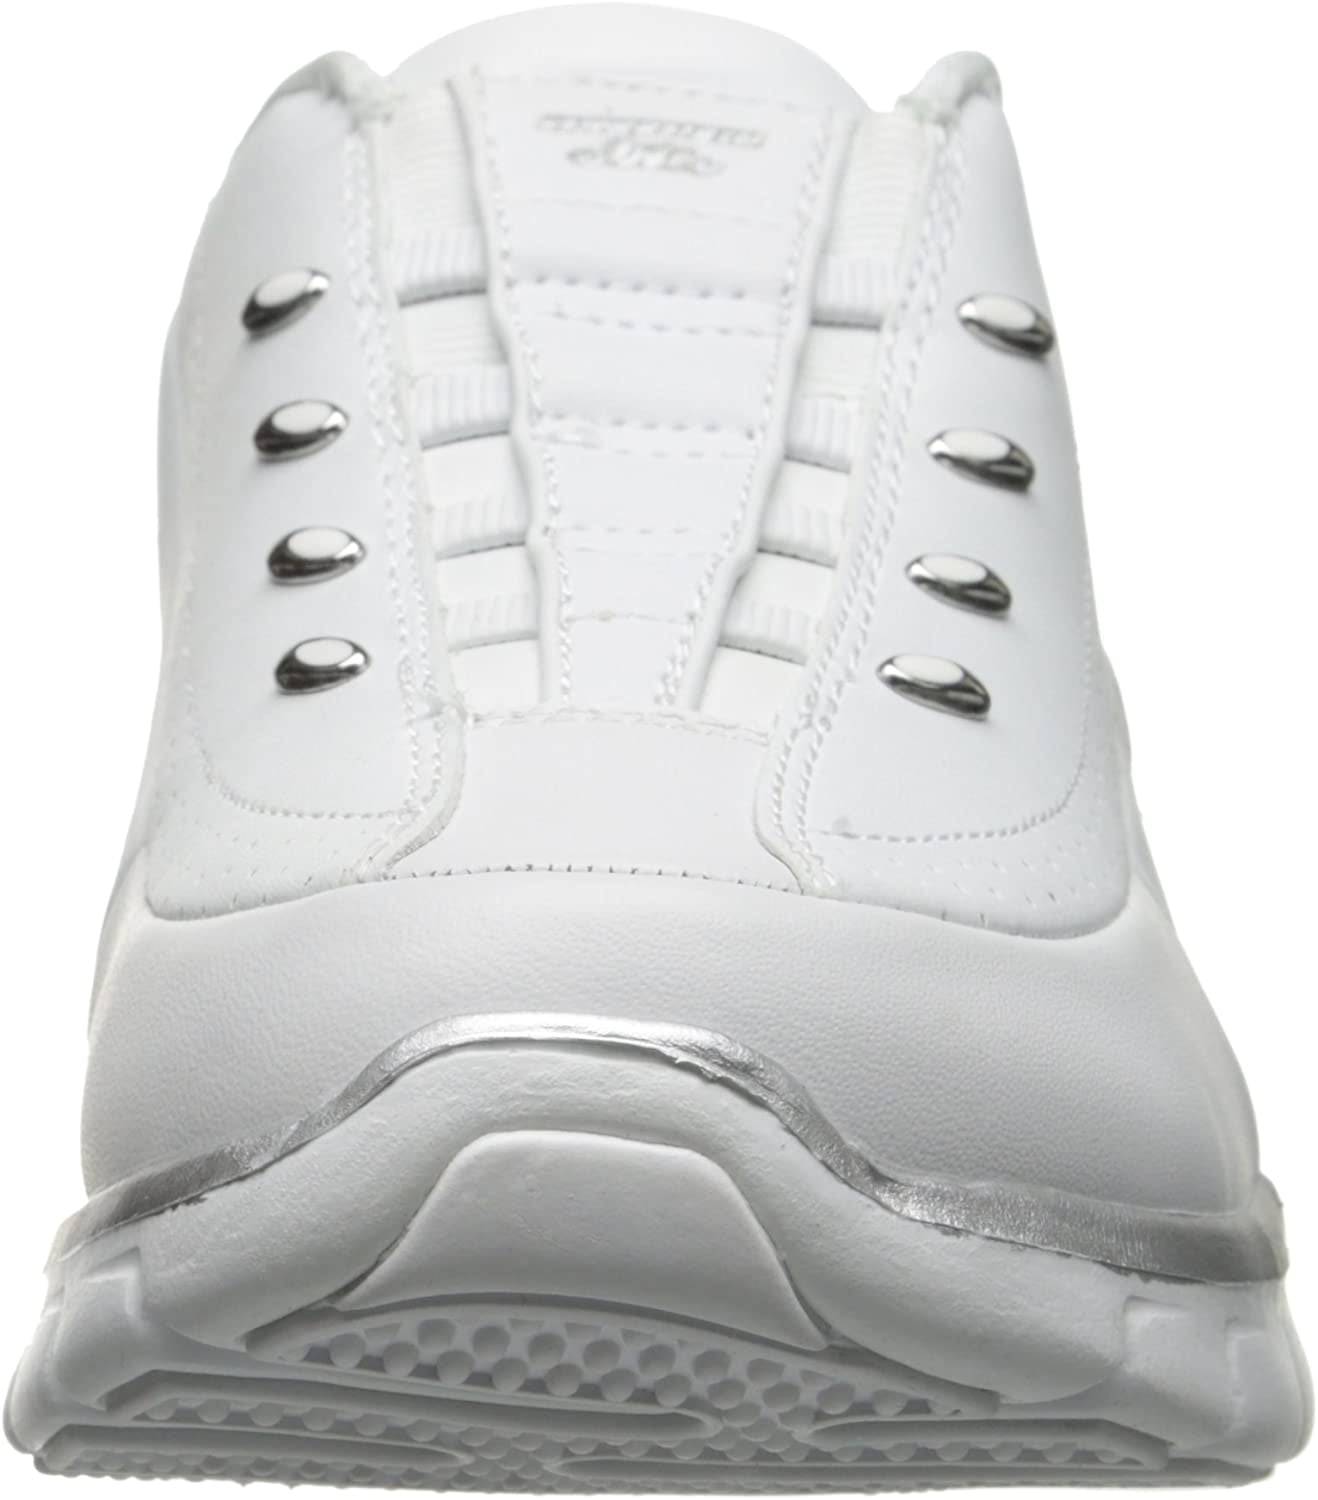 Elite Class Fashion Sneaker,White/Silver,10 M US - Walmart.com